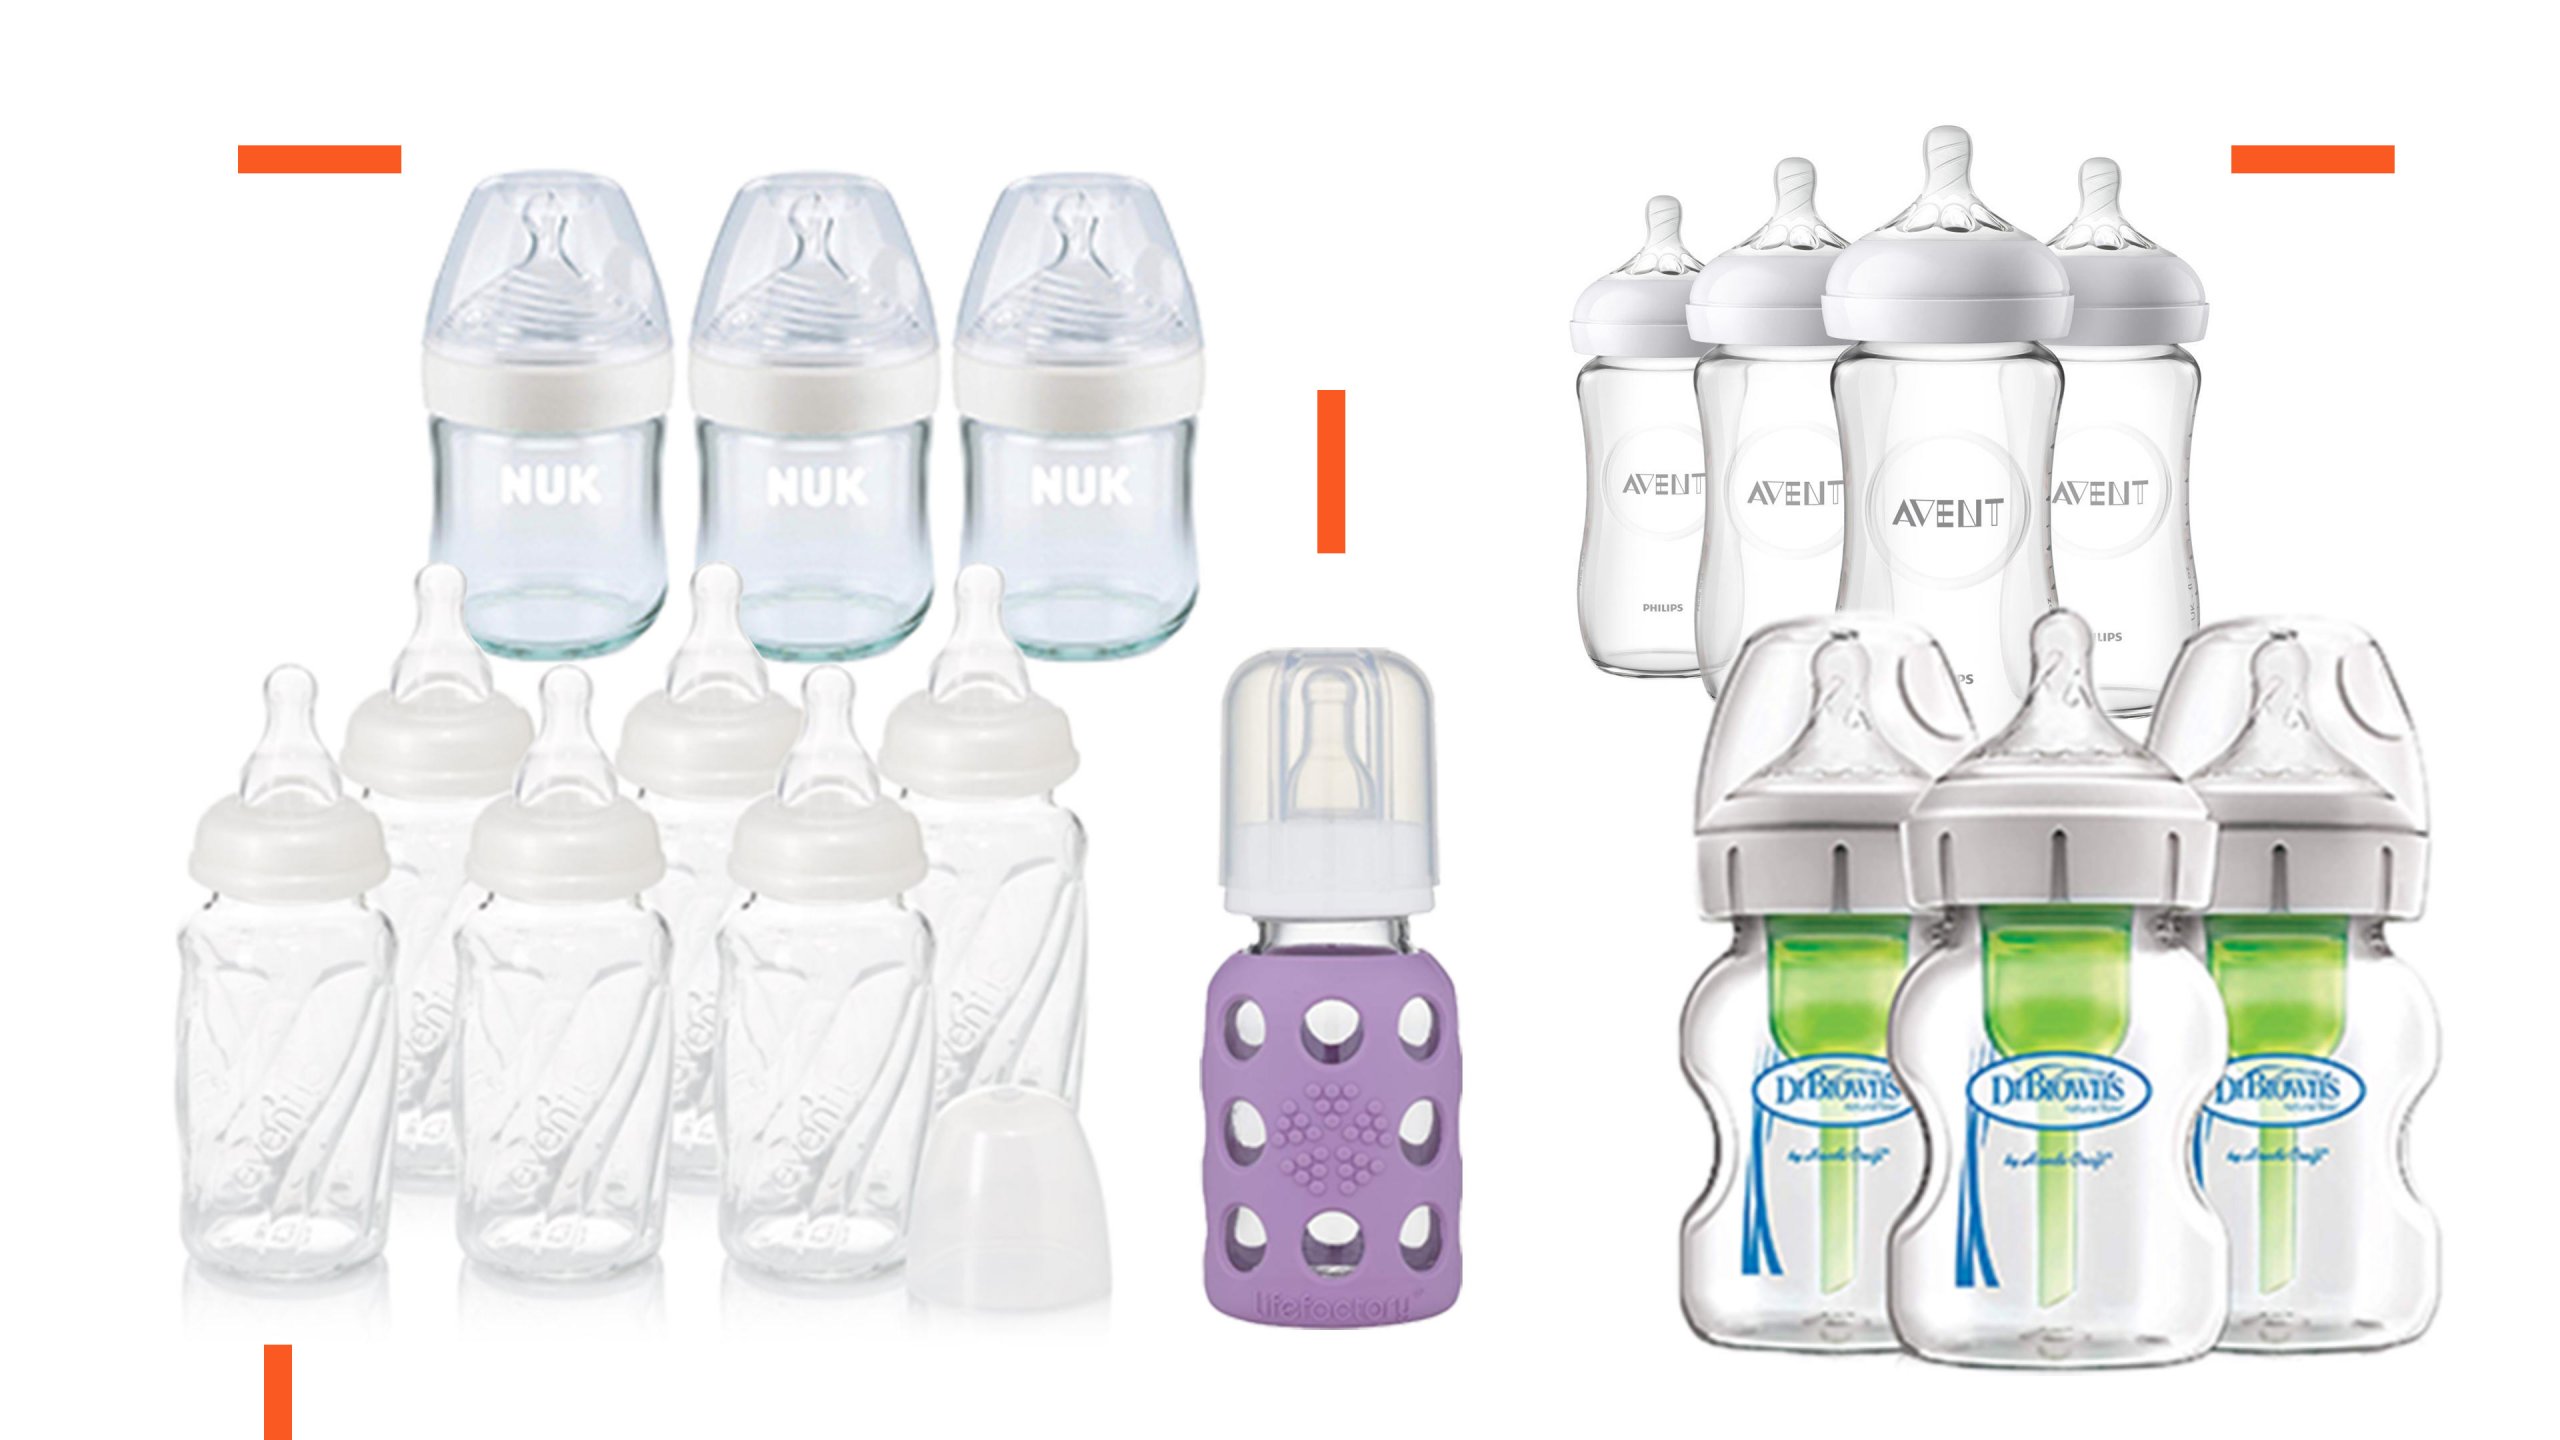 cheap plastic baby bottles